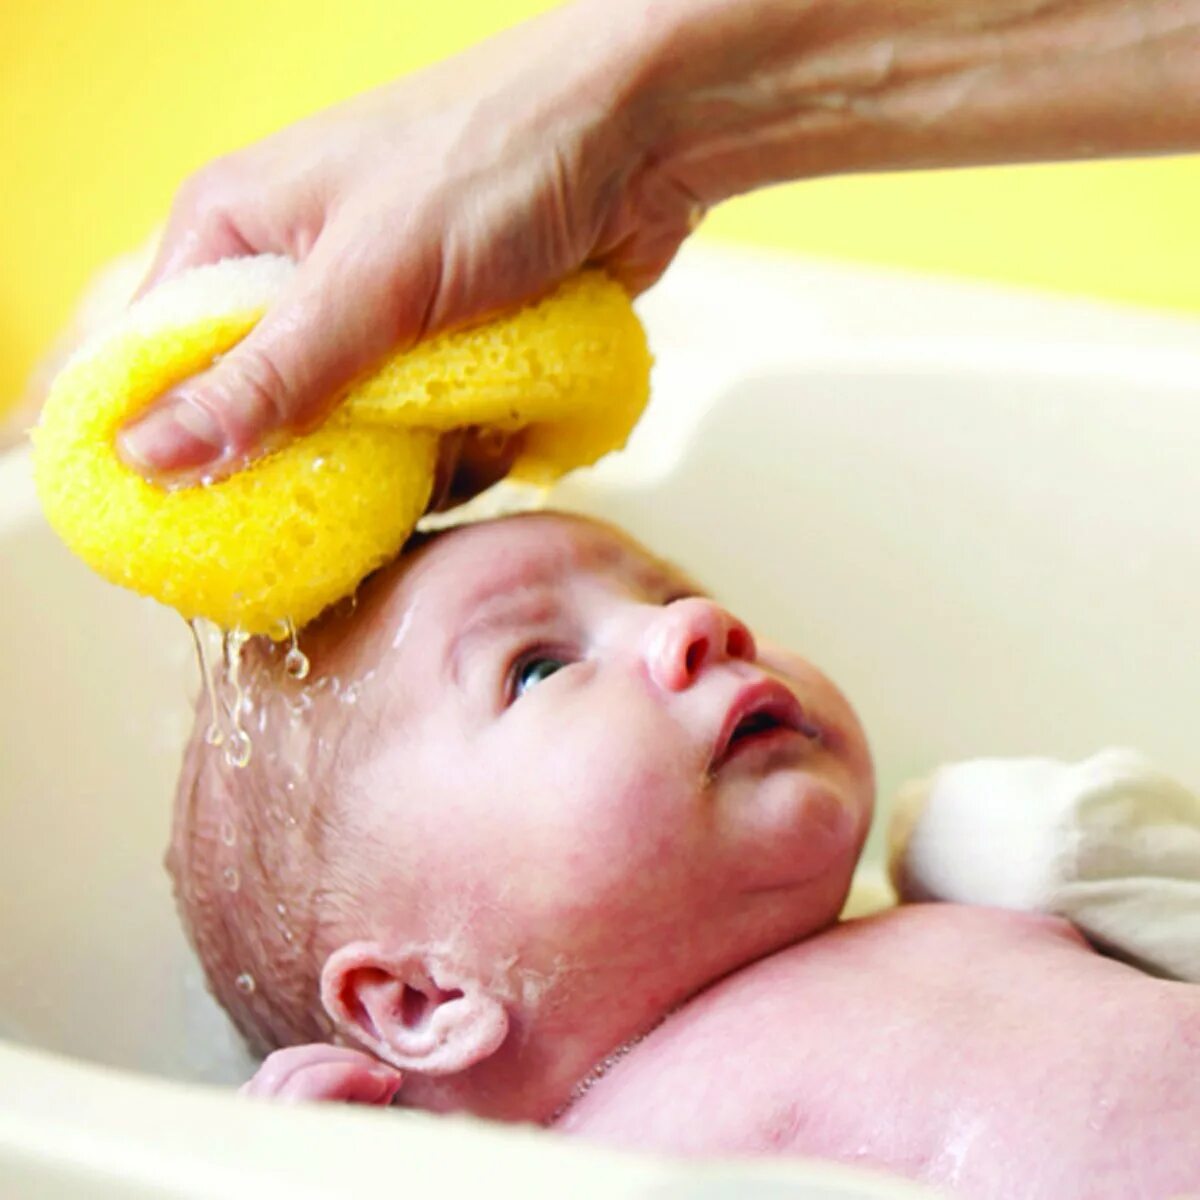 Гигиенические процедуры ребенка. Мытье головы детям. Мытье новорожденного ребенка. Уход за кожей новорожденного. Мытье головы новорожденному ребенку.